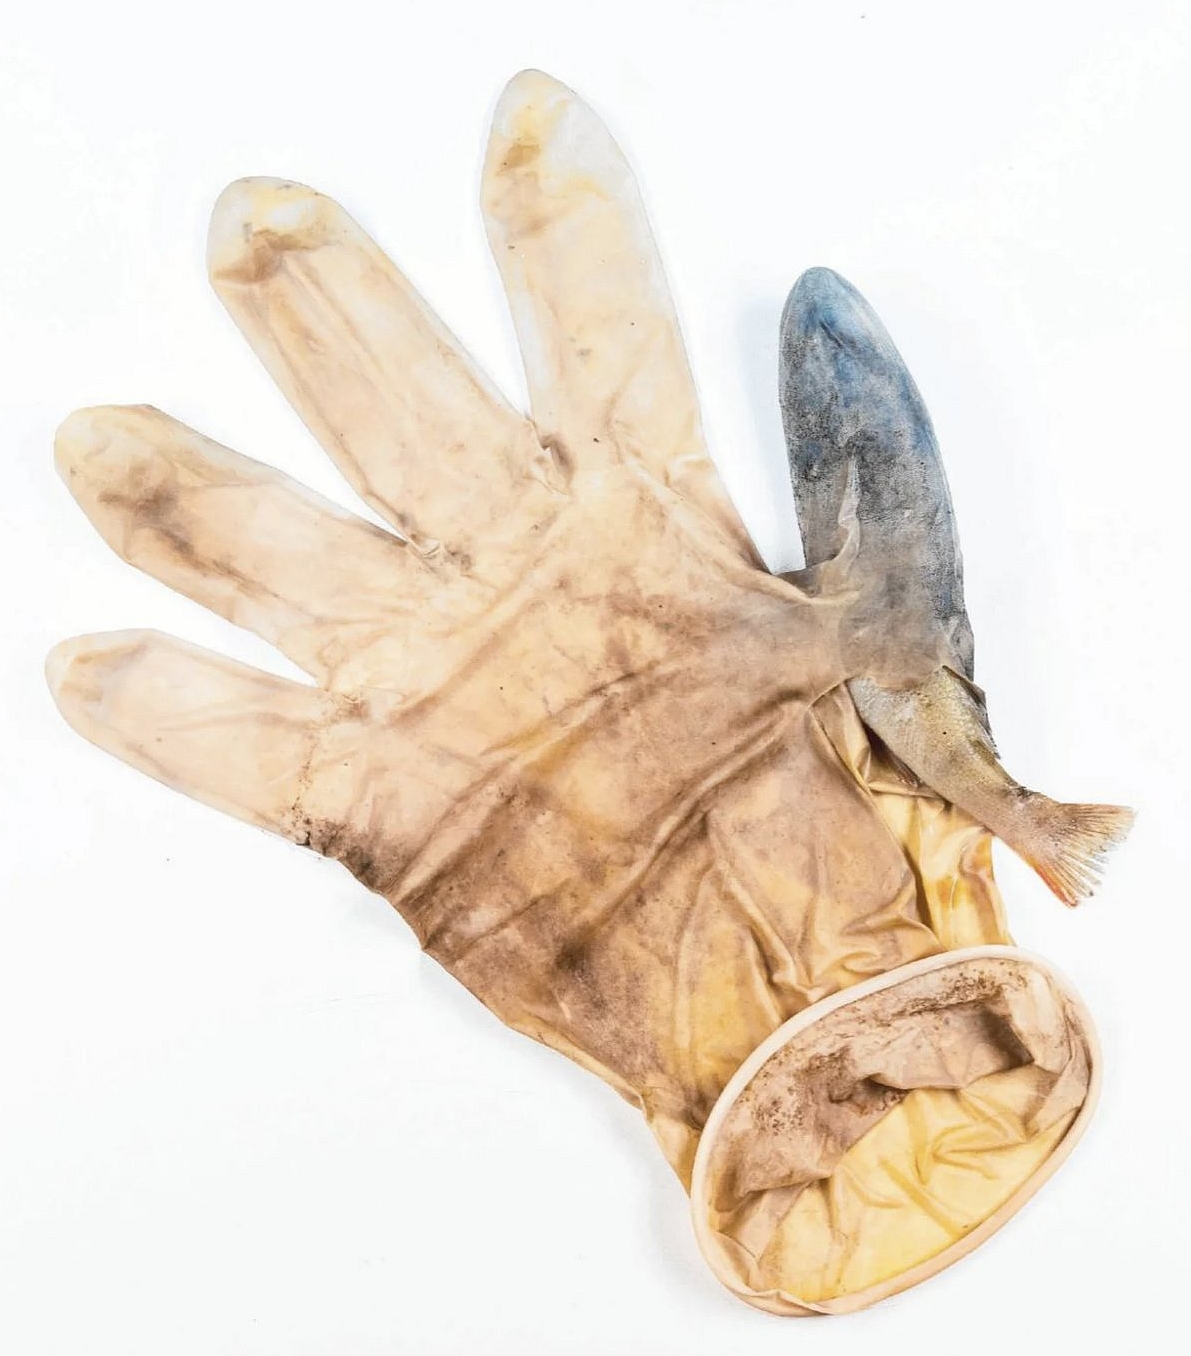 Baars in plastick handschoen